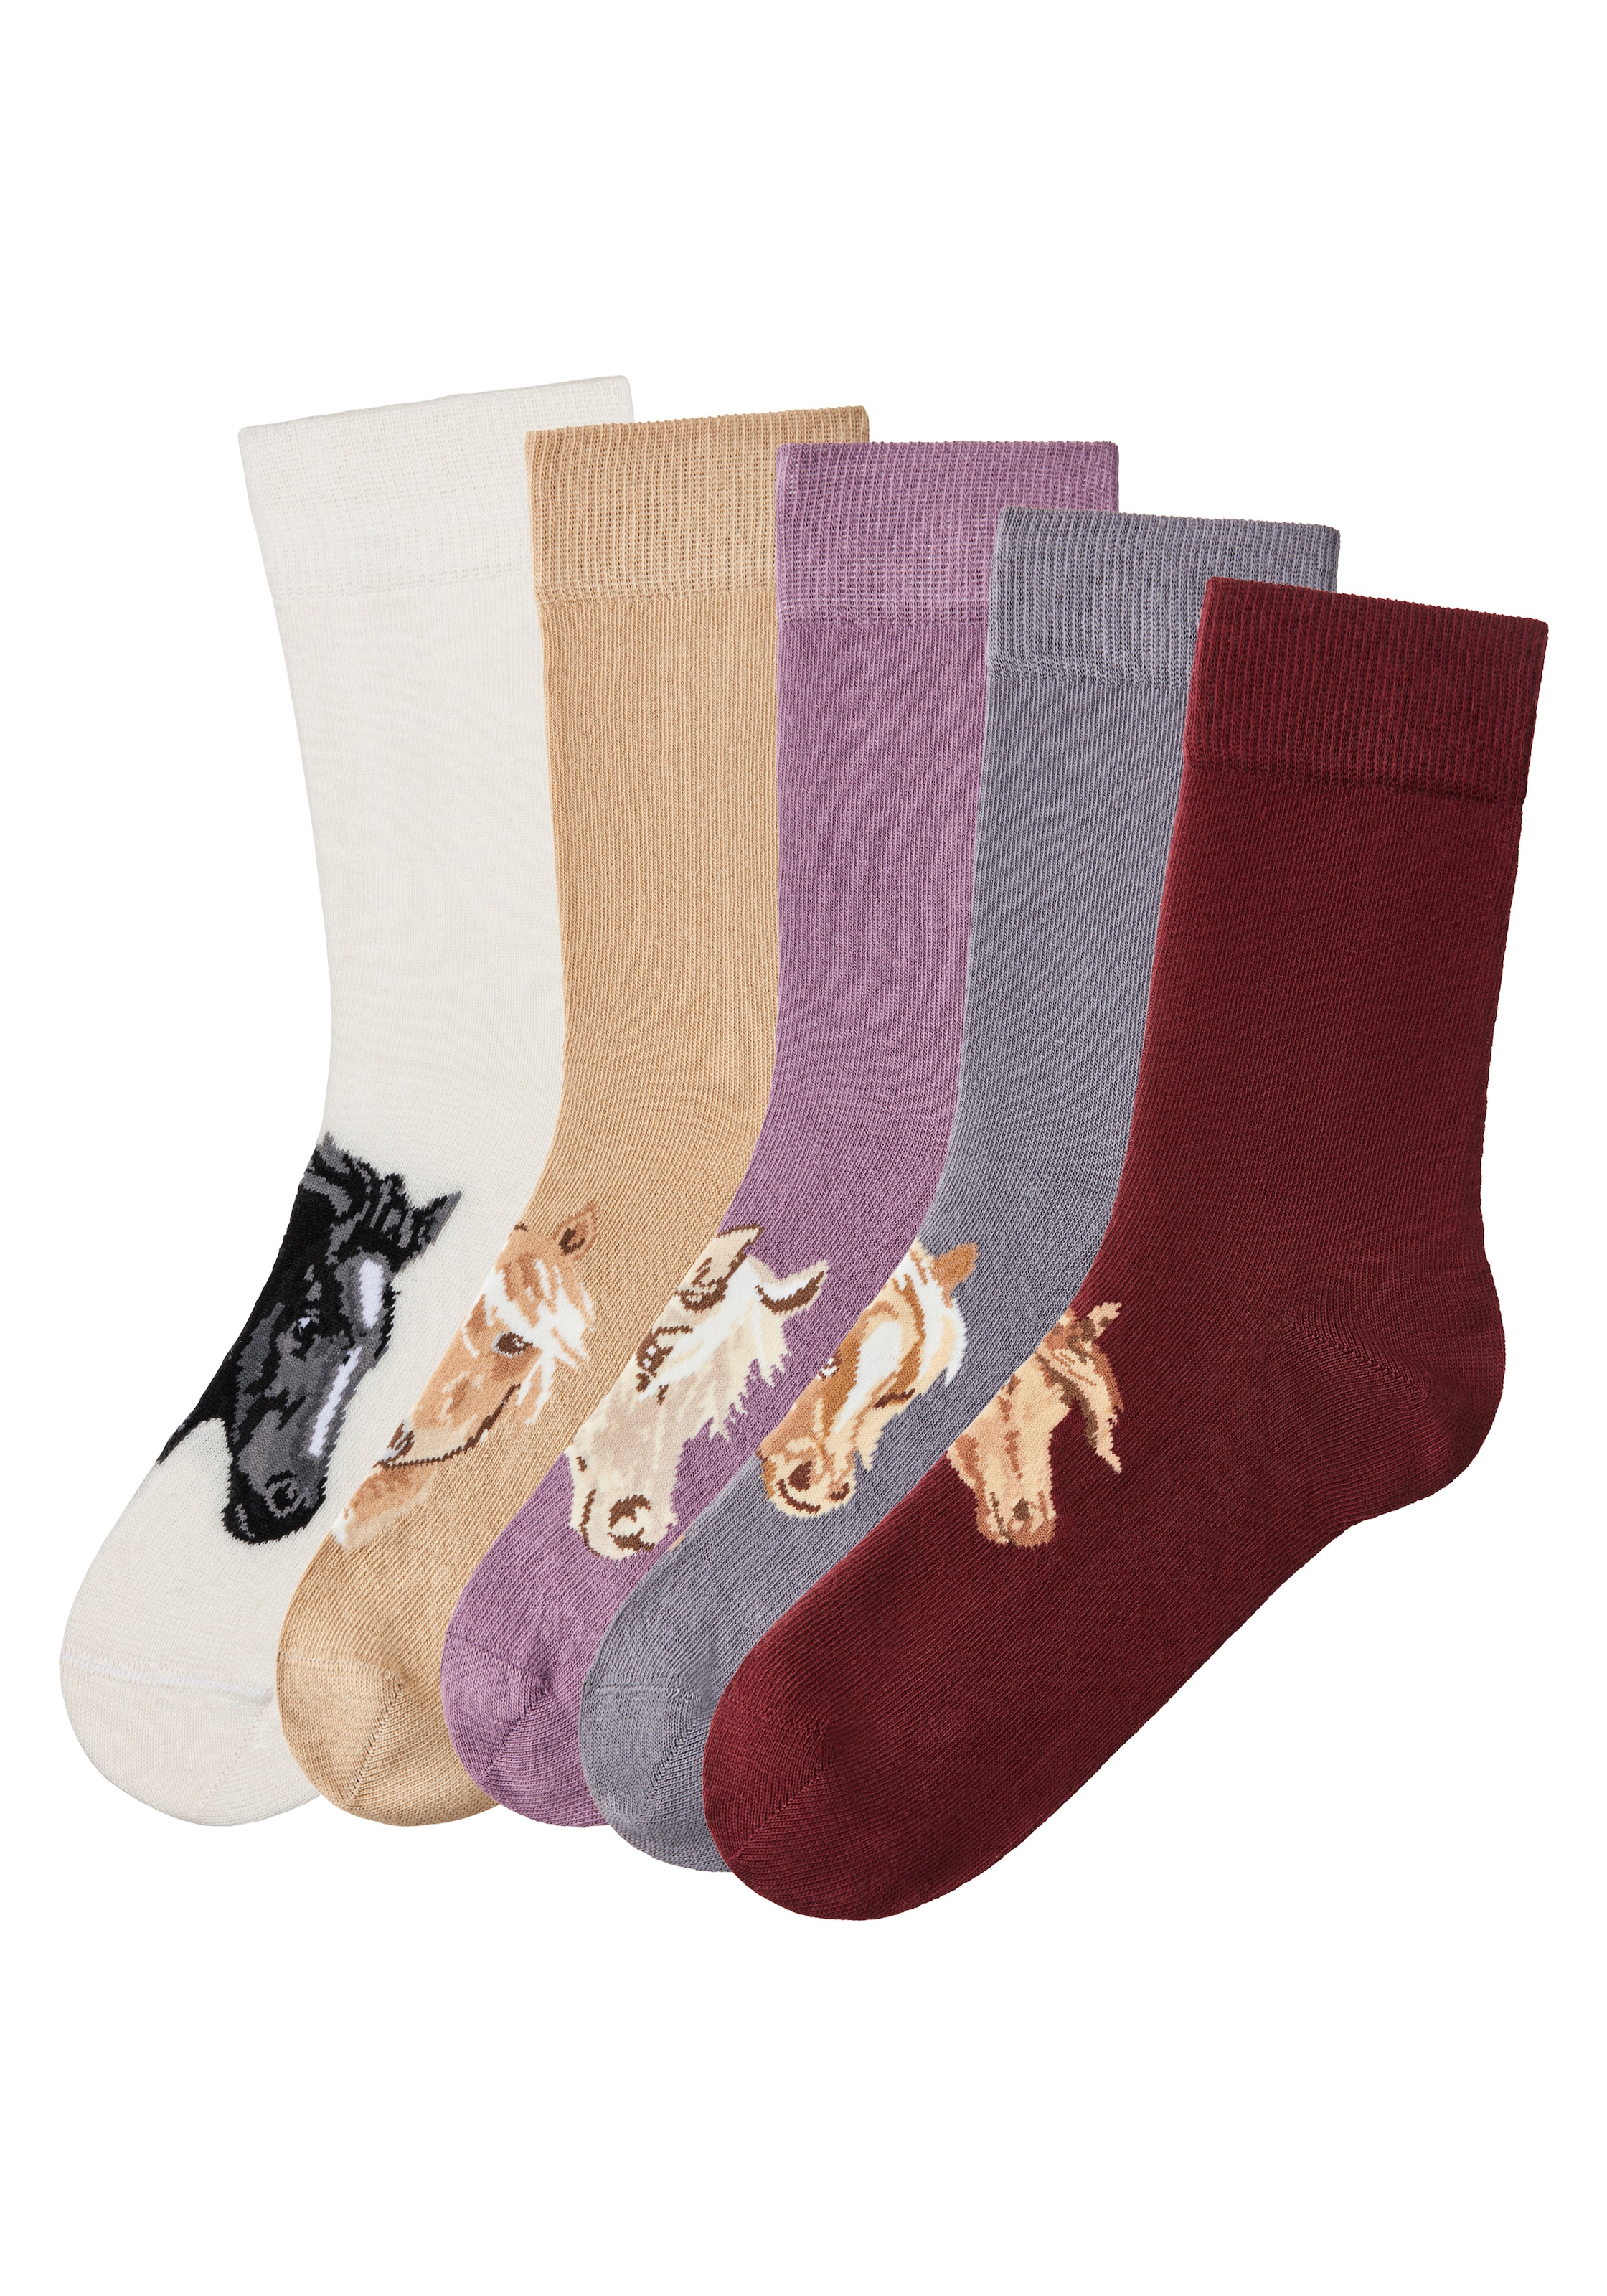 H.I.S Socken, (5 mit verschiedenen Paar), versandkostenfrei auf Pferdemotiven